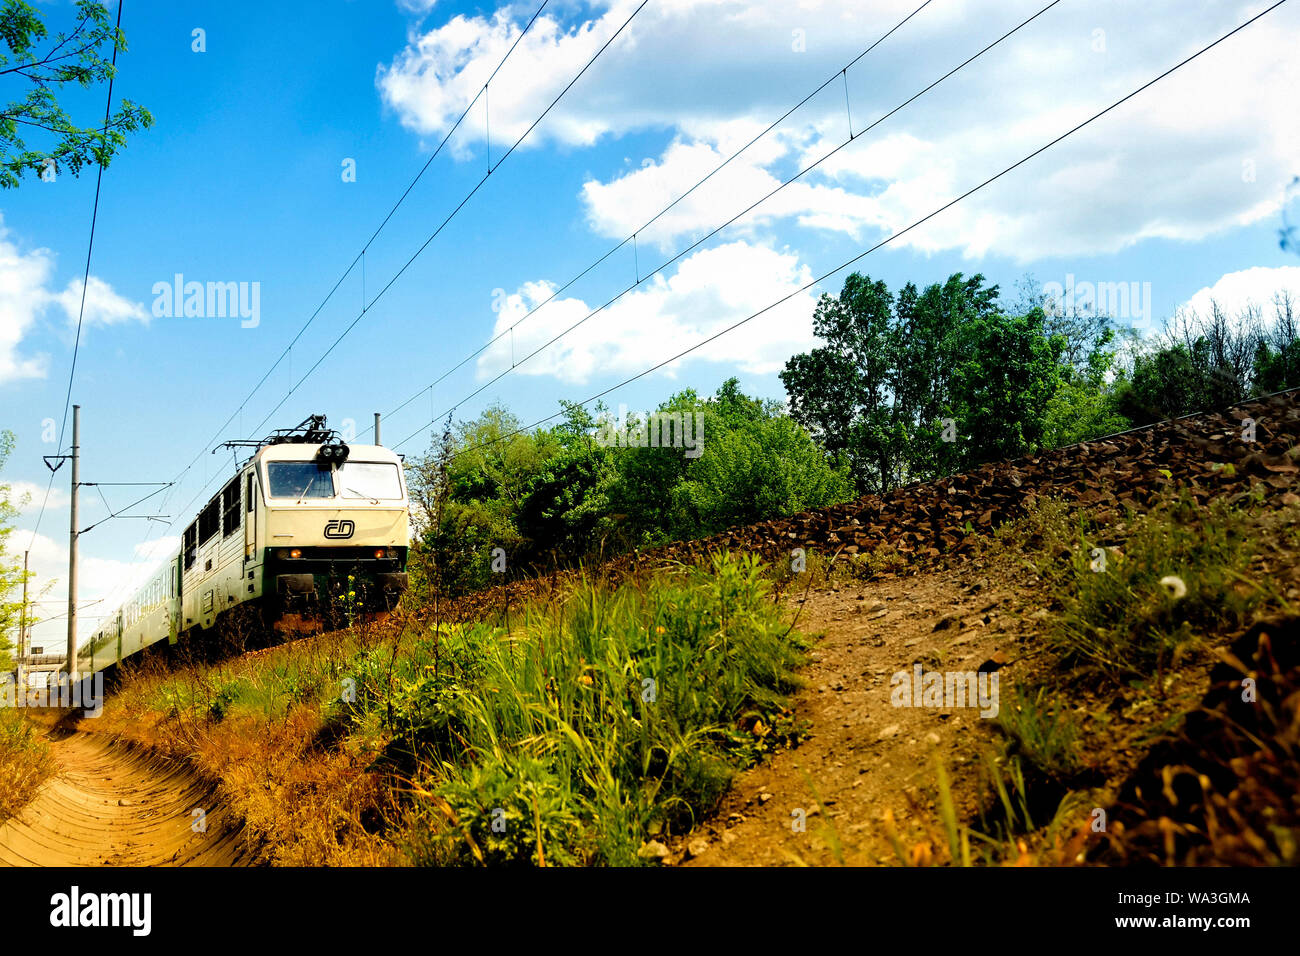 Basso angolo di visione di un treno di Ceske drahy o ferrovie ceche Foto Stock